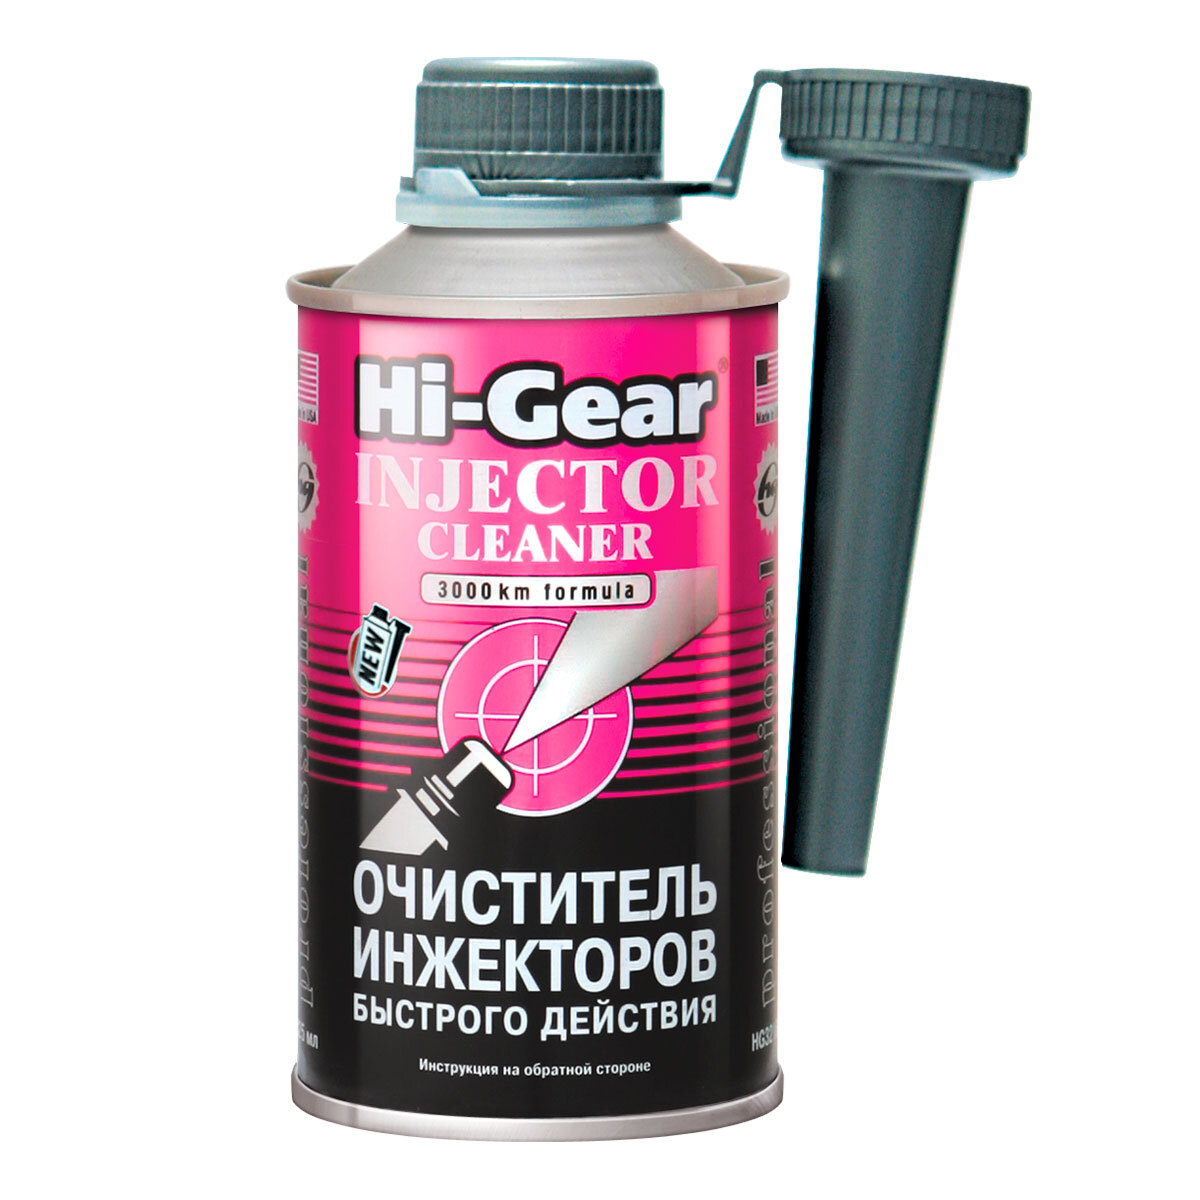 Промывка топливной в бак. Hi-Gear hg3216. Очиститель инжекторов hg3216. Hi-Gear hg3218 очиститель форсунок. Очиститель Hi-Gear hg3247.